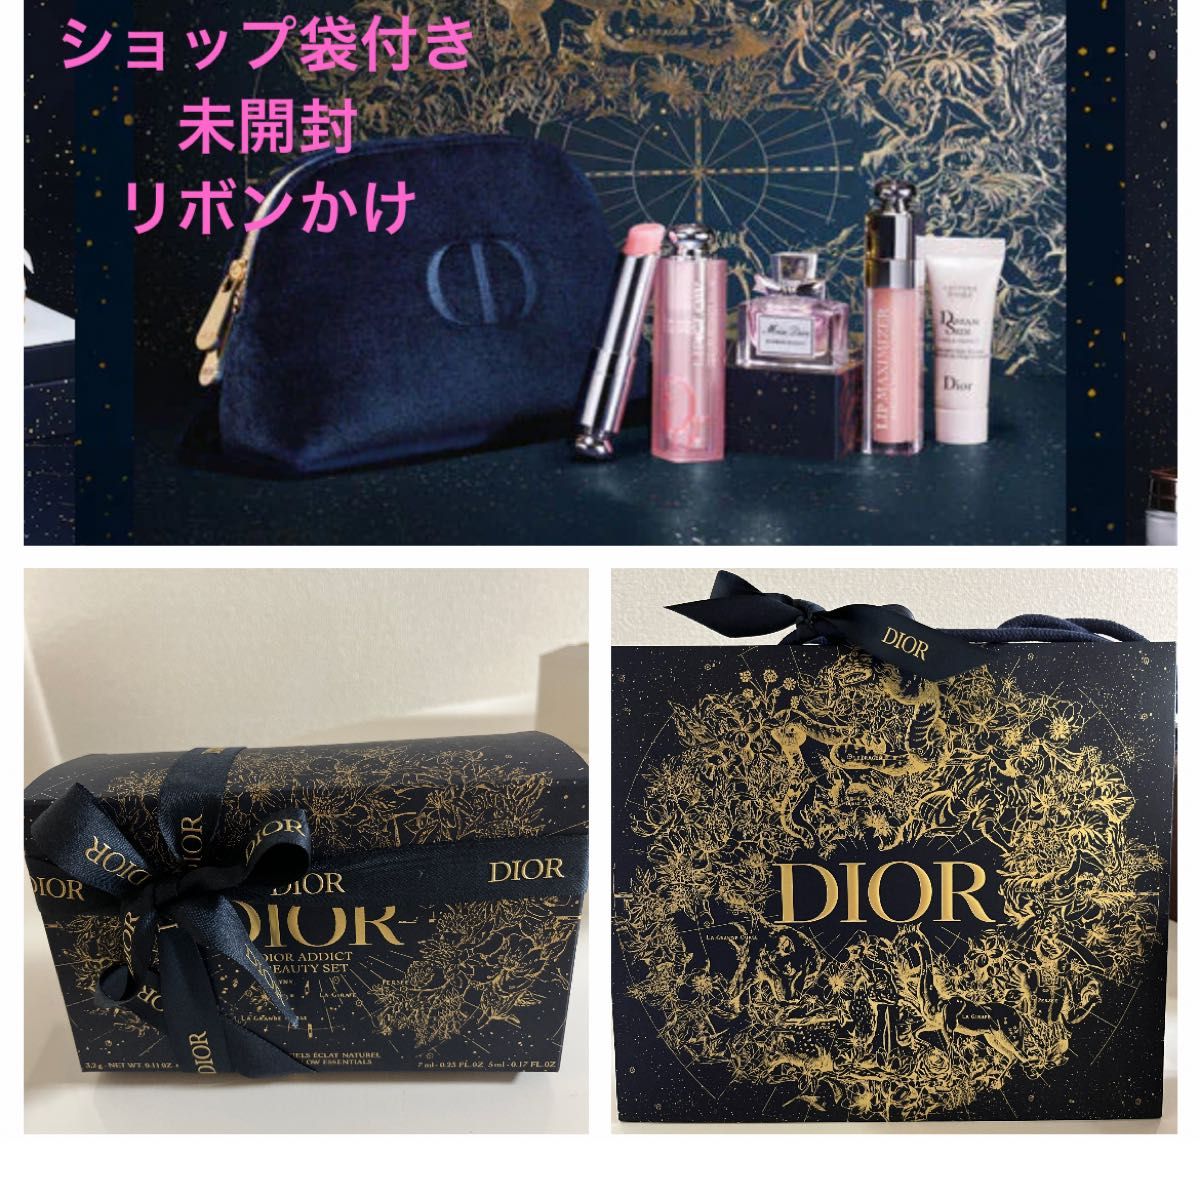 新品 未開封 Dior ディオール ホリデーオファー 限定コフレ サンプル